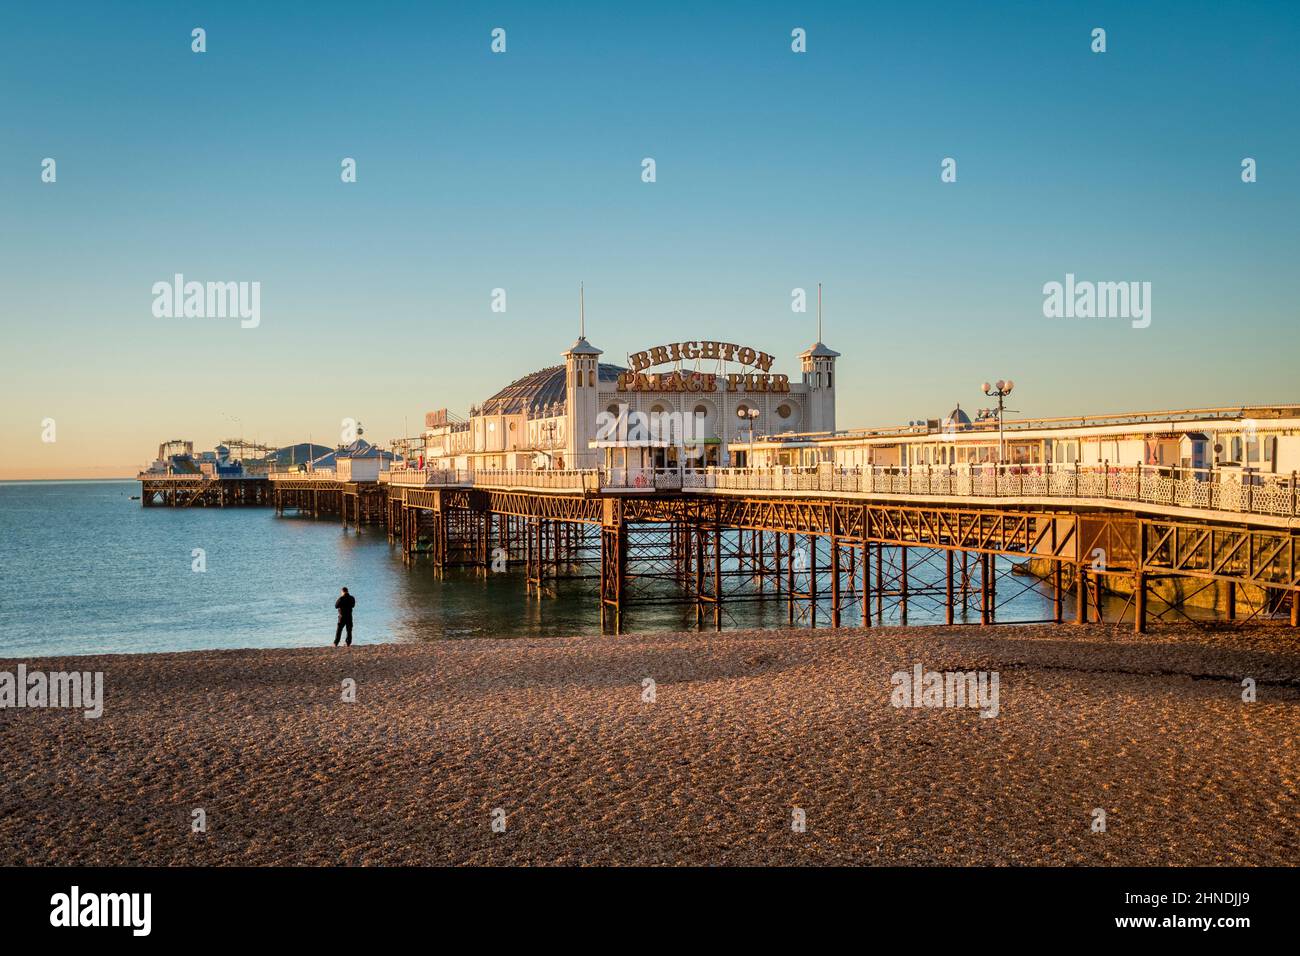 14 janvier 2022: Brighton, East Sussex, Royaume-Uni - Sunrise at Brighton Palace Pier, avec homme debout sur la plage, avec vue sur la mer. Banque D'Images